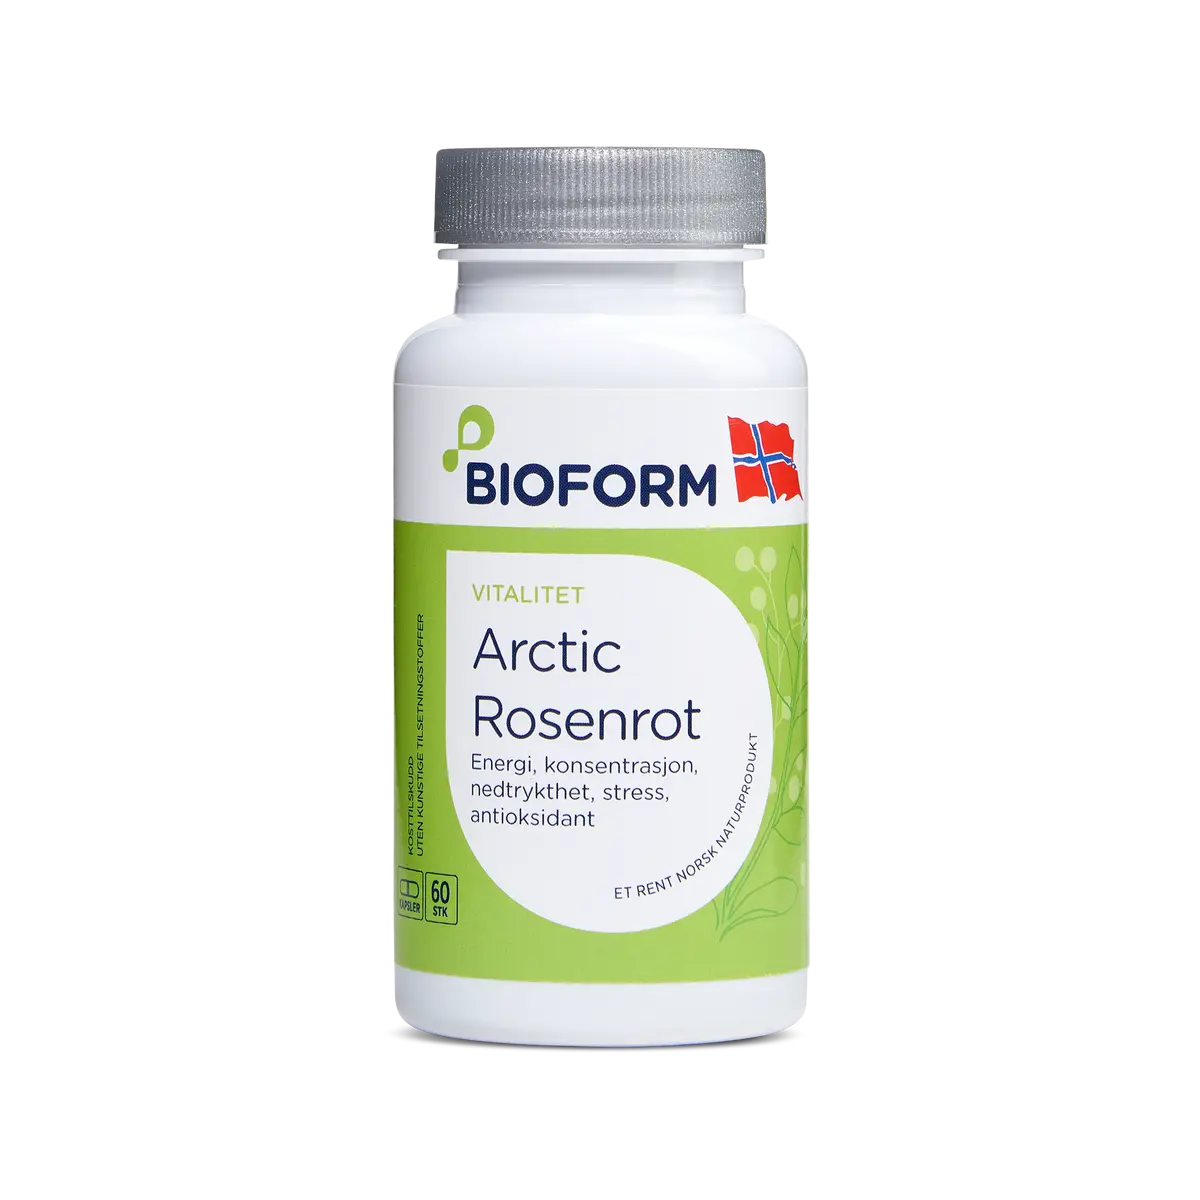 Arctic Rosenrot